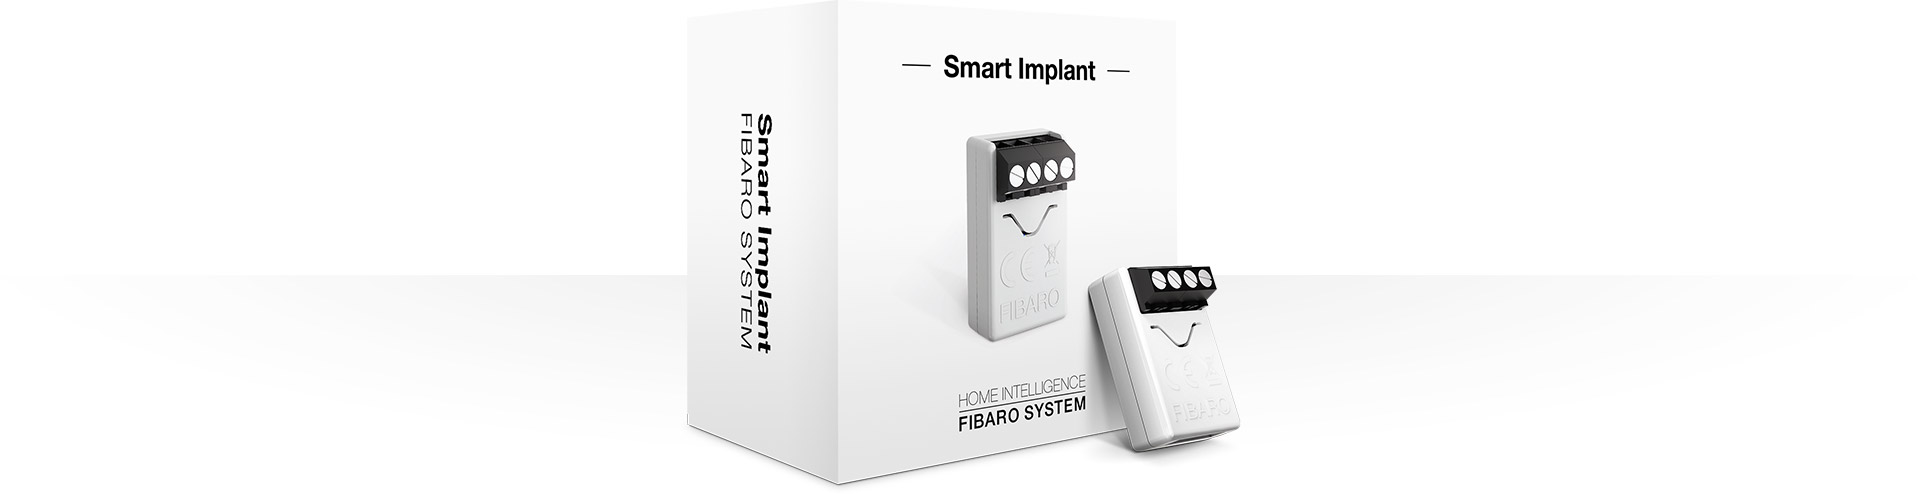 Smart Home München: Packshot Smart Implant